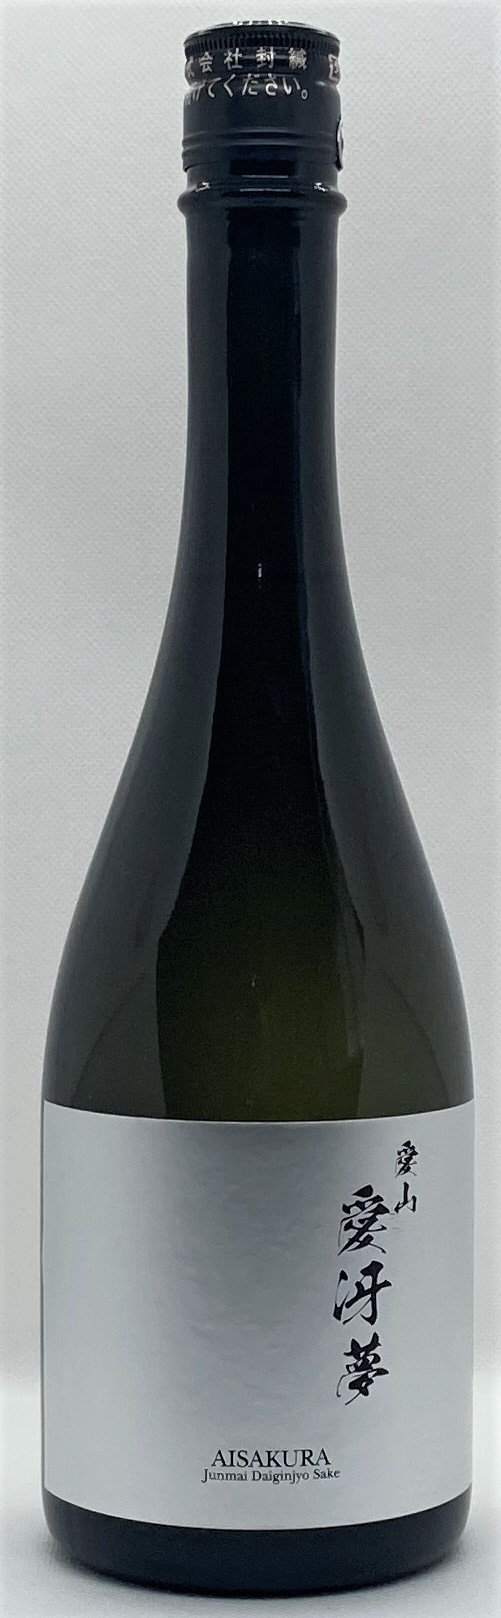 「愛冴夢」 純米大吟醸酒 720ml ”35％精米”  幻の酒米 「愛山」 贅沢に使用 2C04027